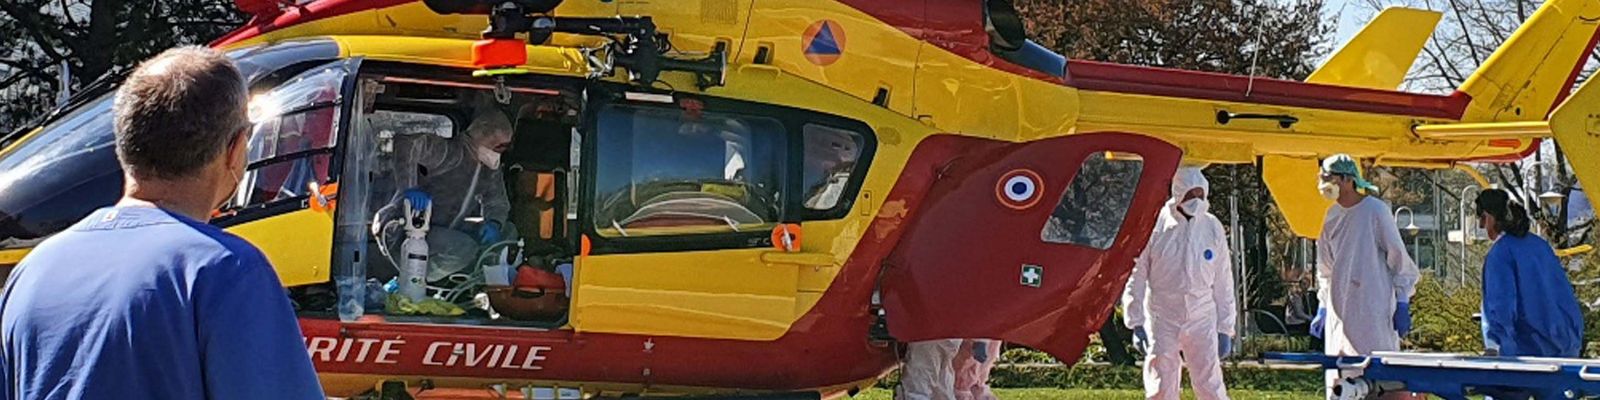 Hubschrauber mit französischem Patienten 20200401_143309_frz.jpg